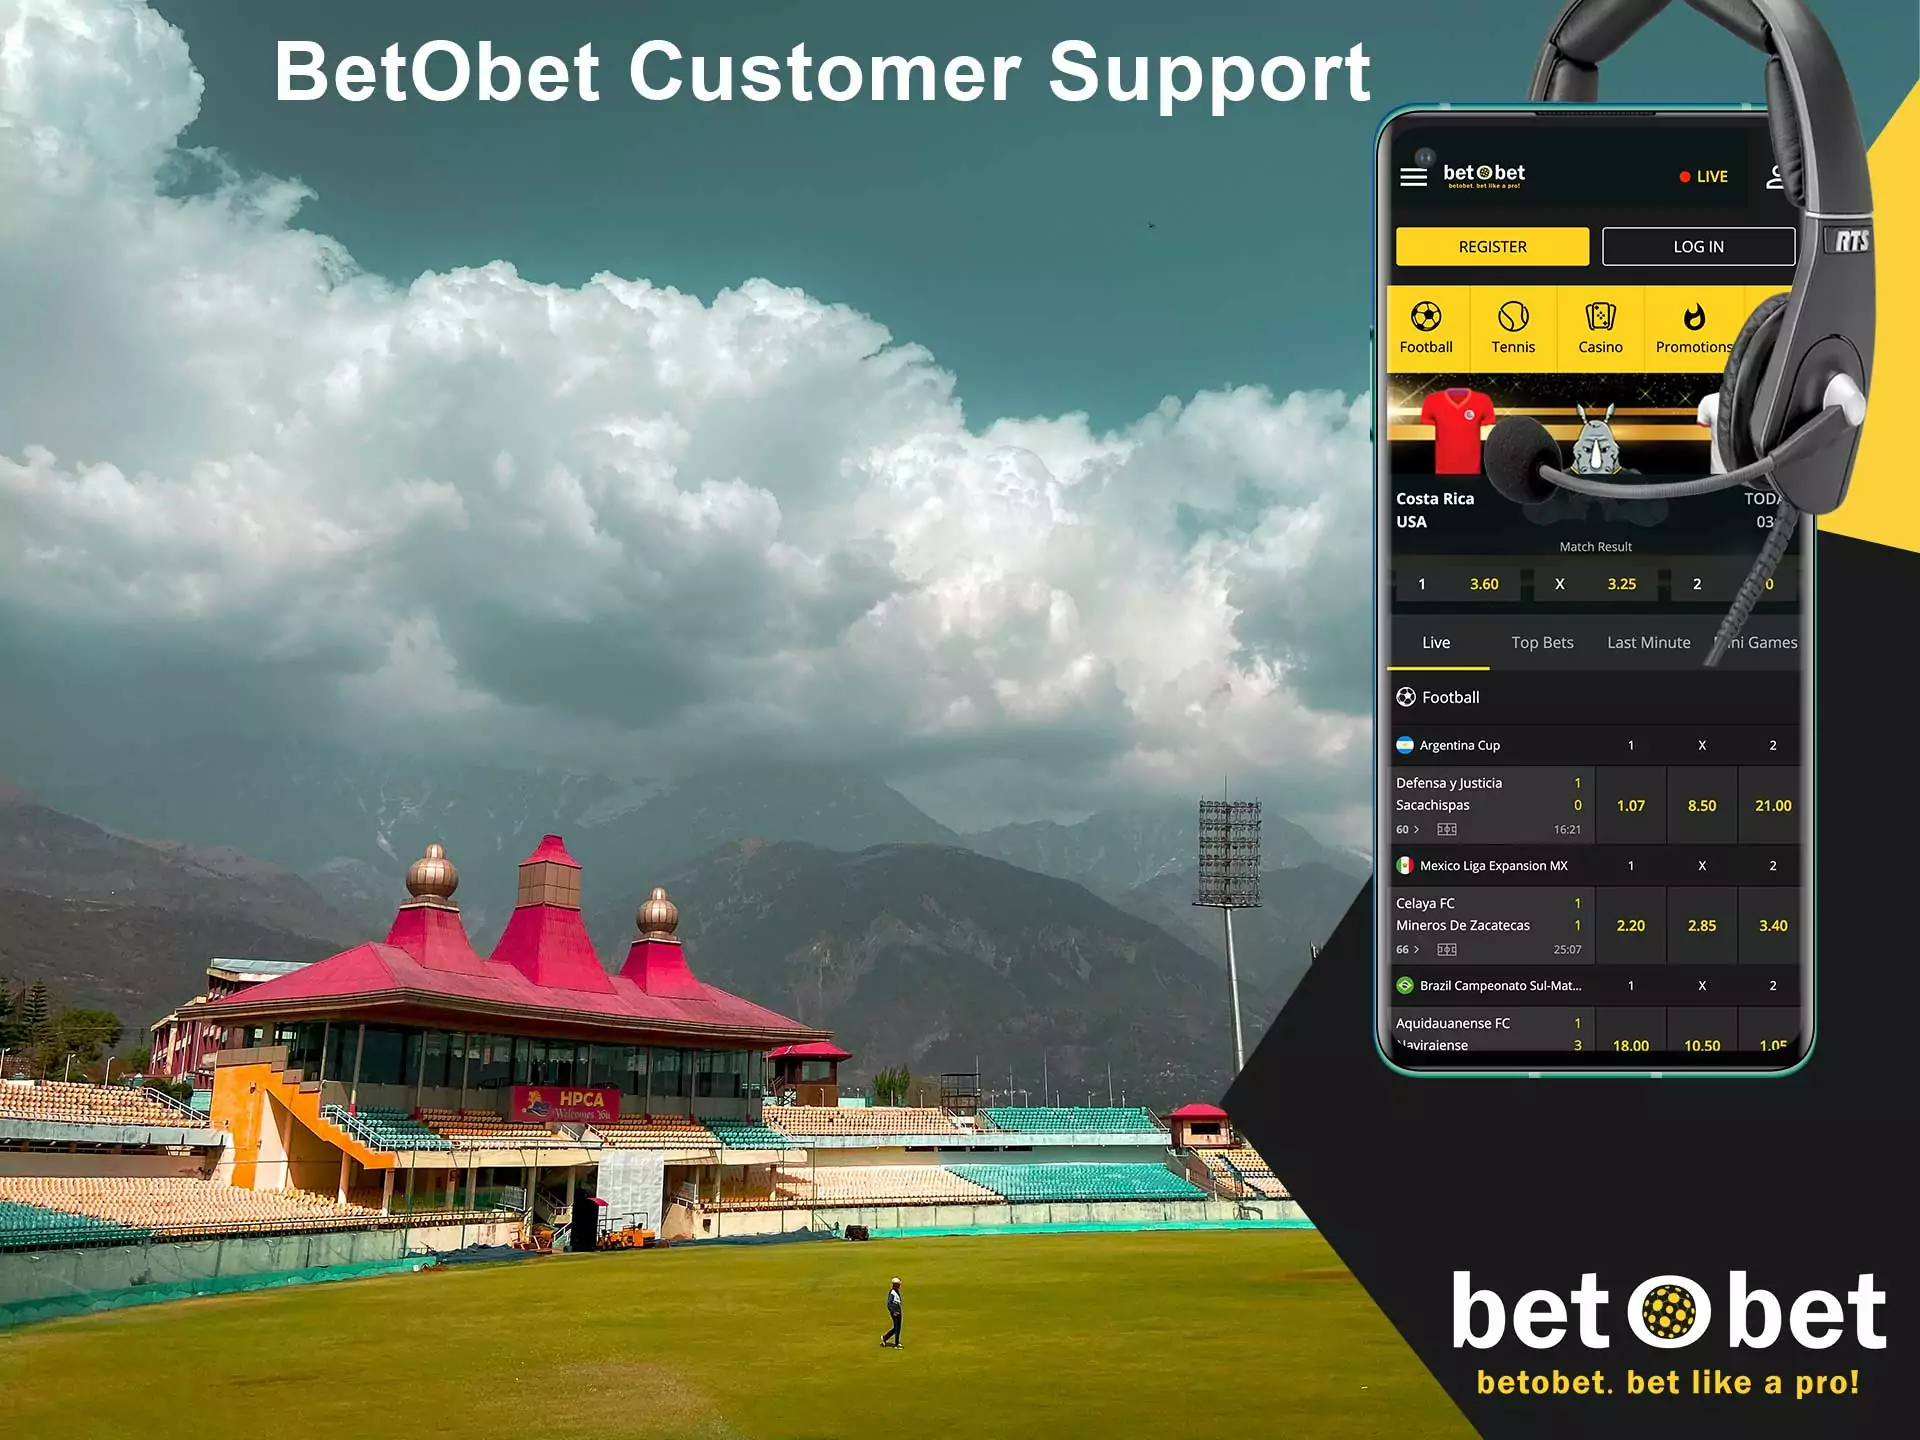 Betobet भारत के उपयोगकर्ताओं के लिए गुणवत्तापूर्ण ग्राहक सेवा प्रदान करता है।